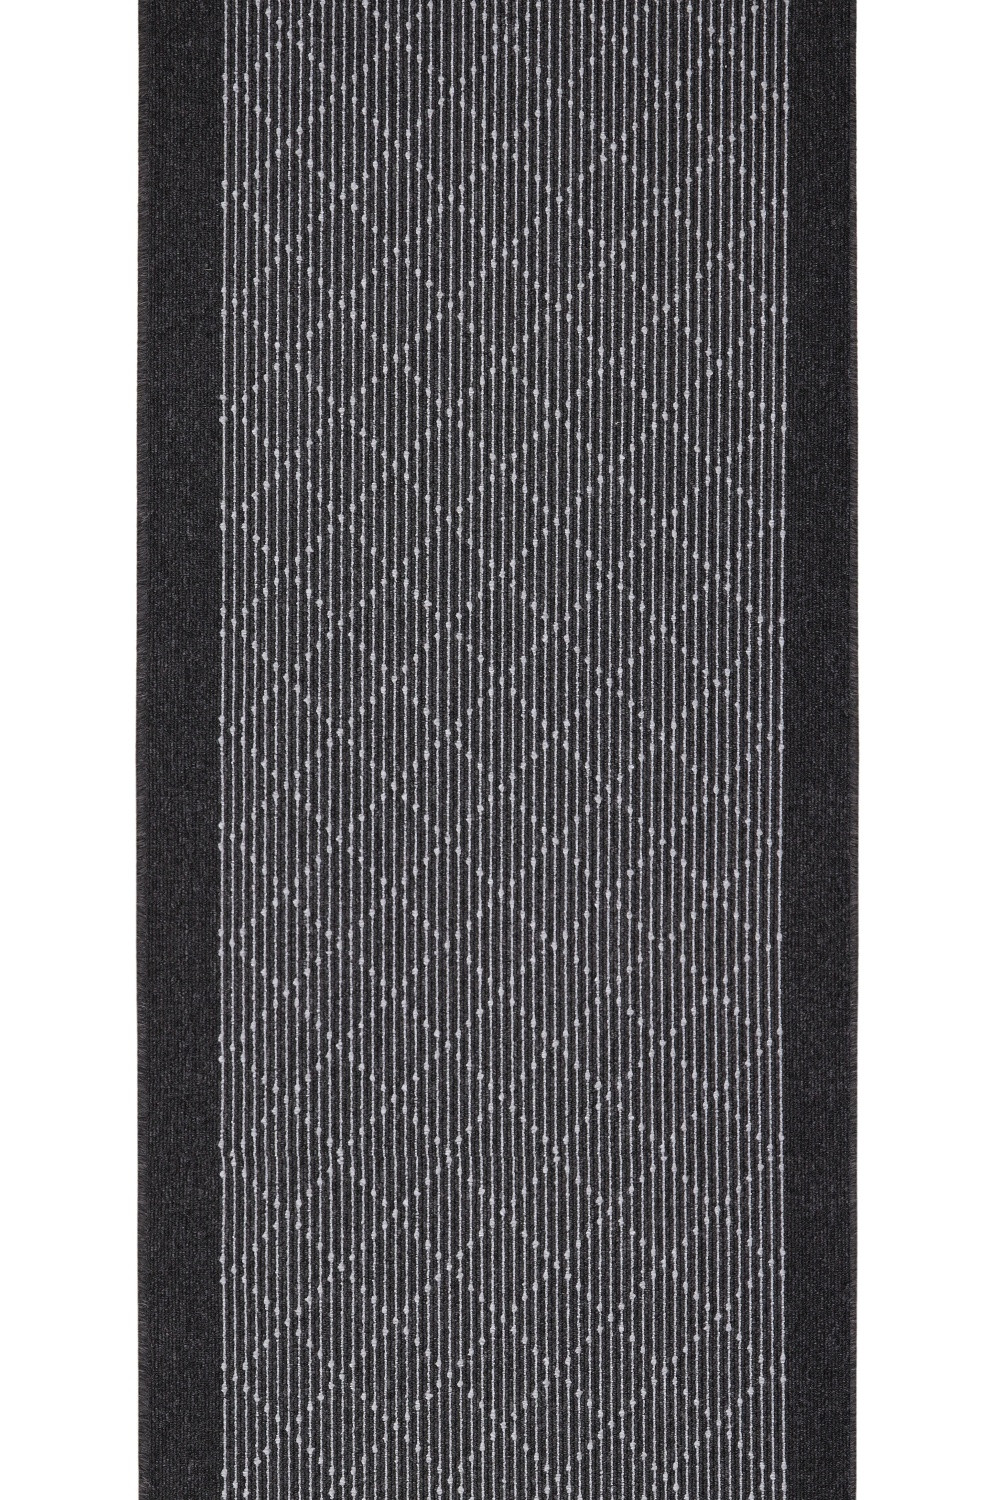 AKCE: 110x100 cm s obšitím Protiskluzový běhoun na míru Boulevard 9229 - šíře 100 cm Condor Carpets